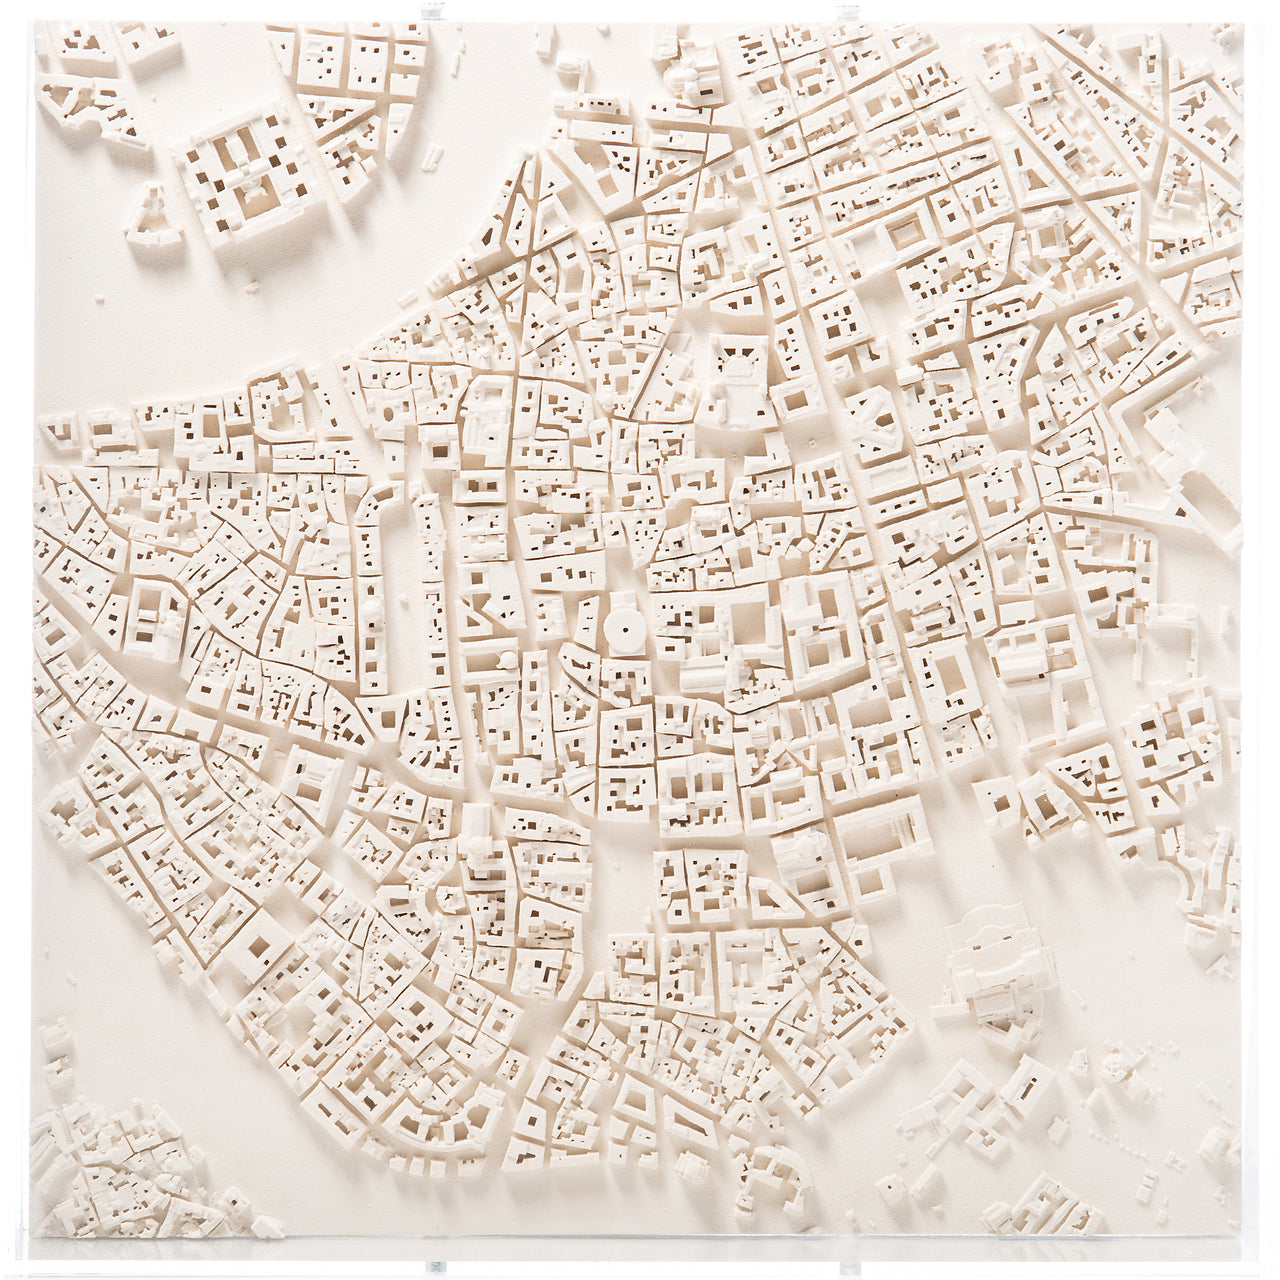 Rome Cityscape Architectural Model